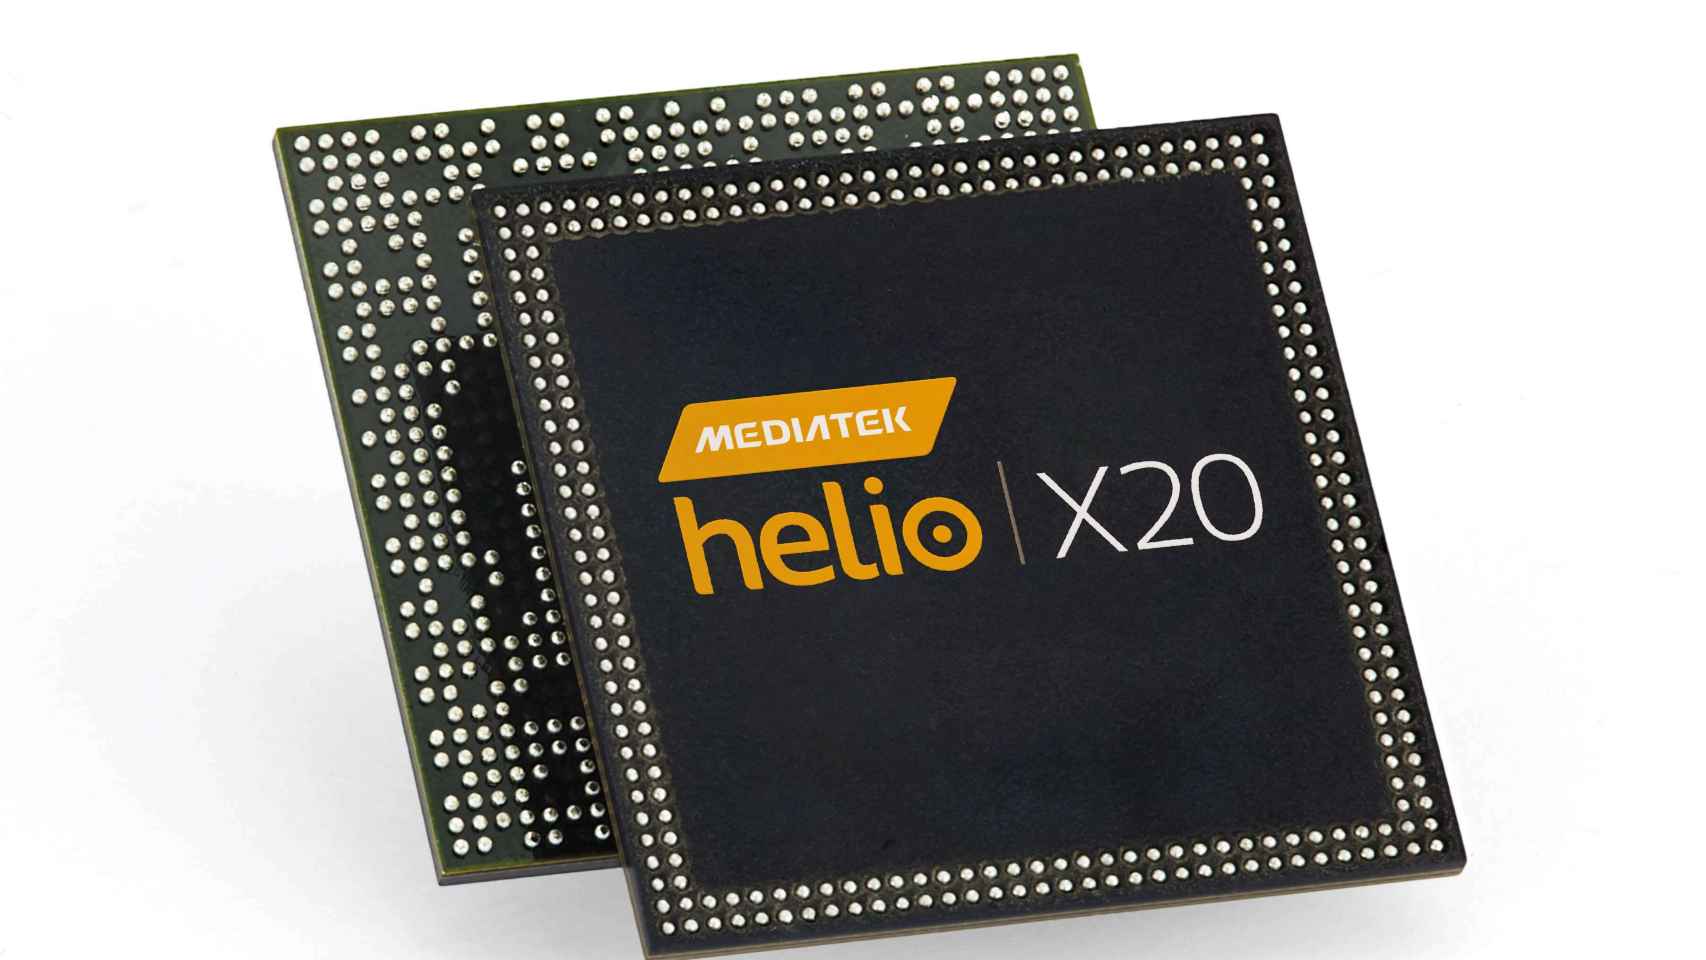 Mediatek HelioX20, el primer procesador de diez núcleos del mercado